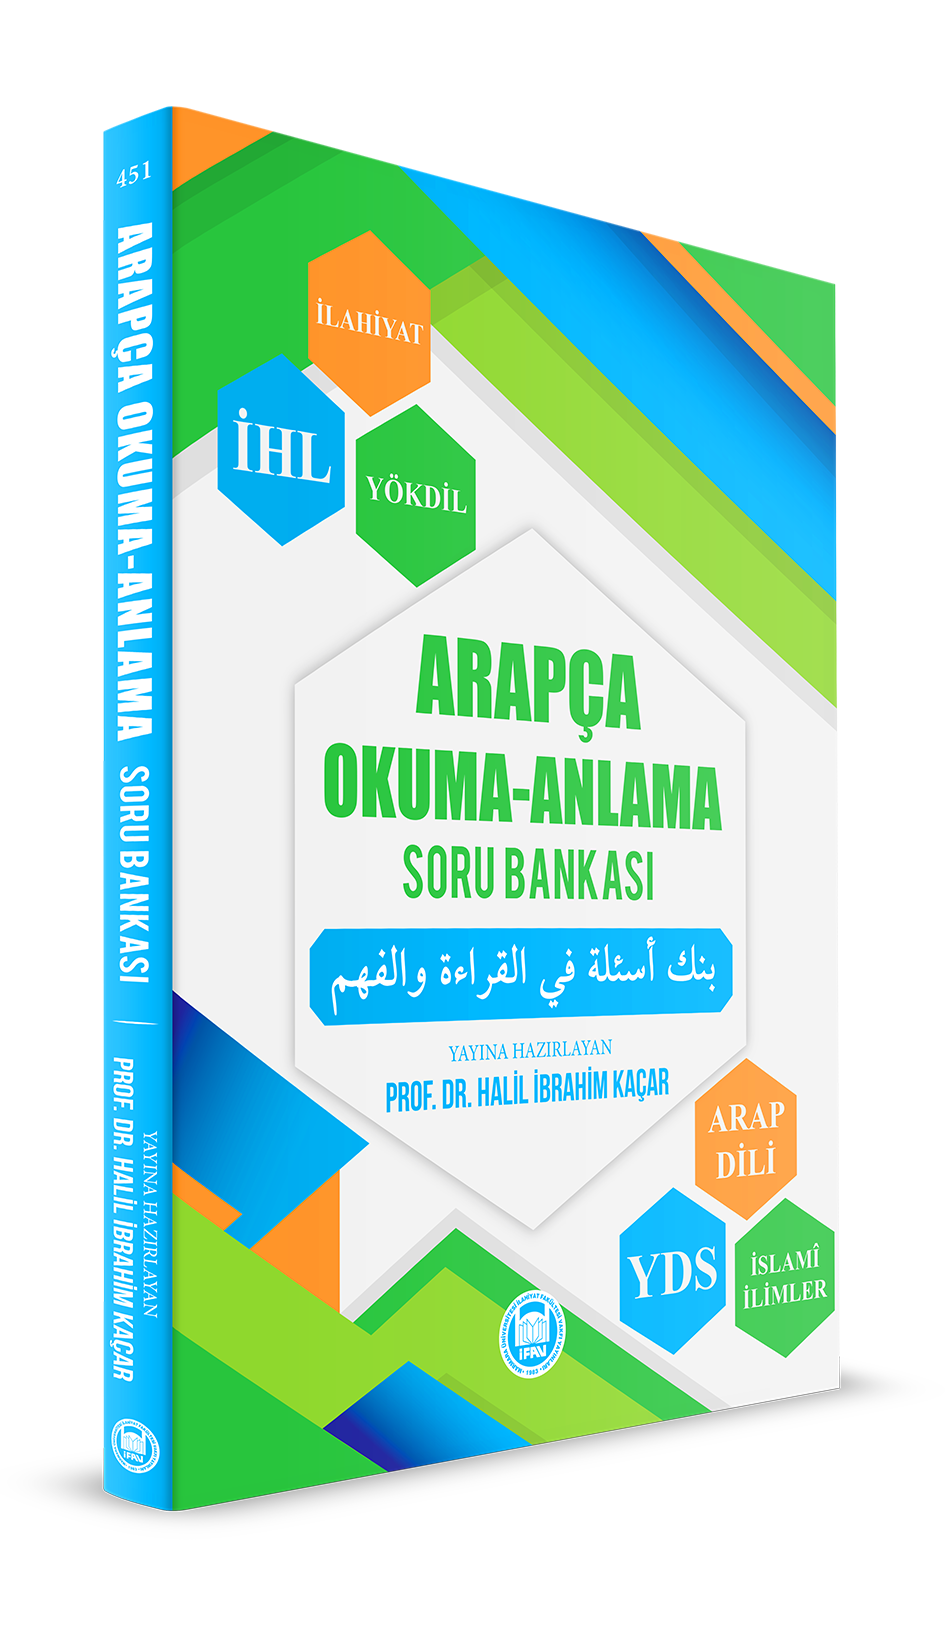 Arapça - Okuma - Anlatma Soru Bankası